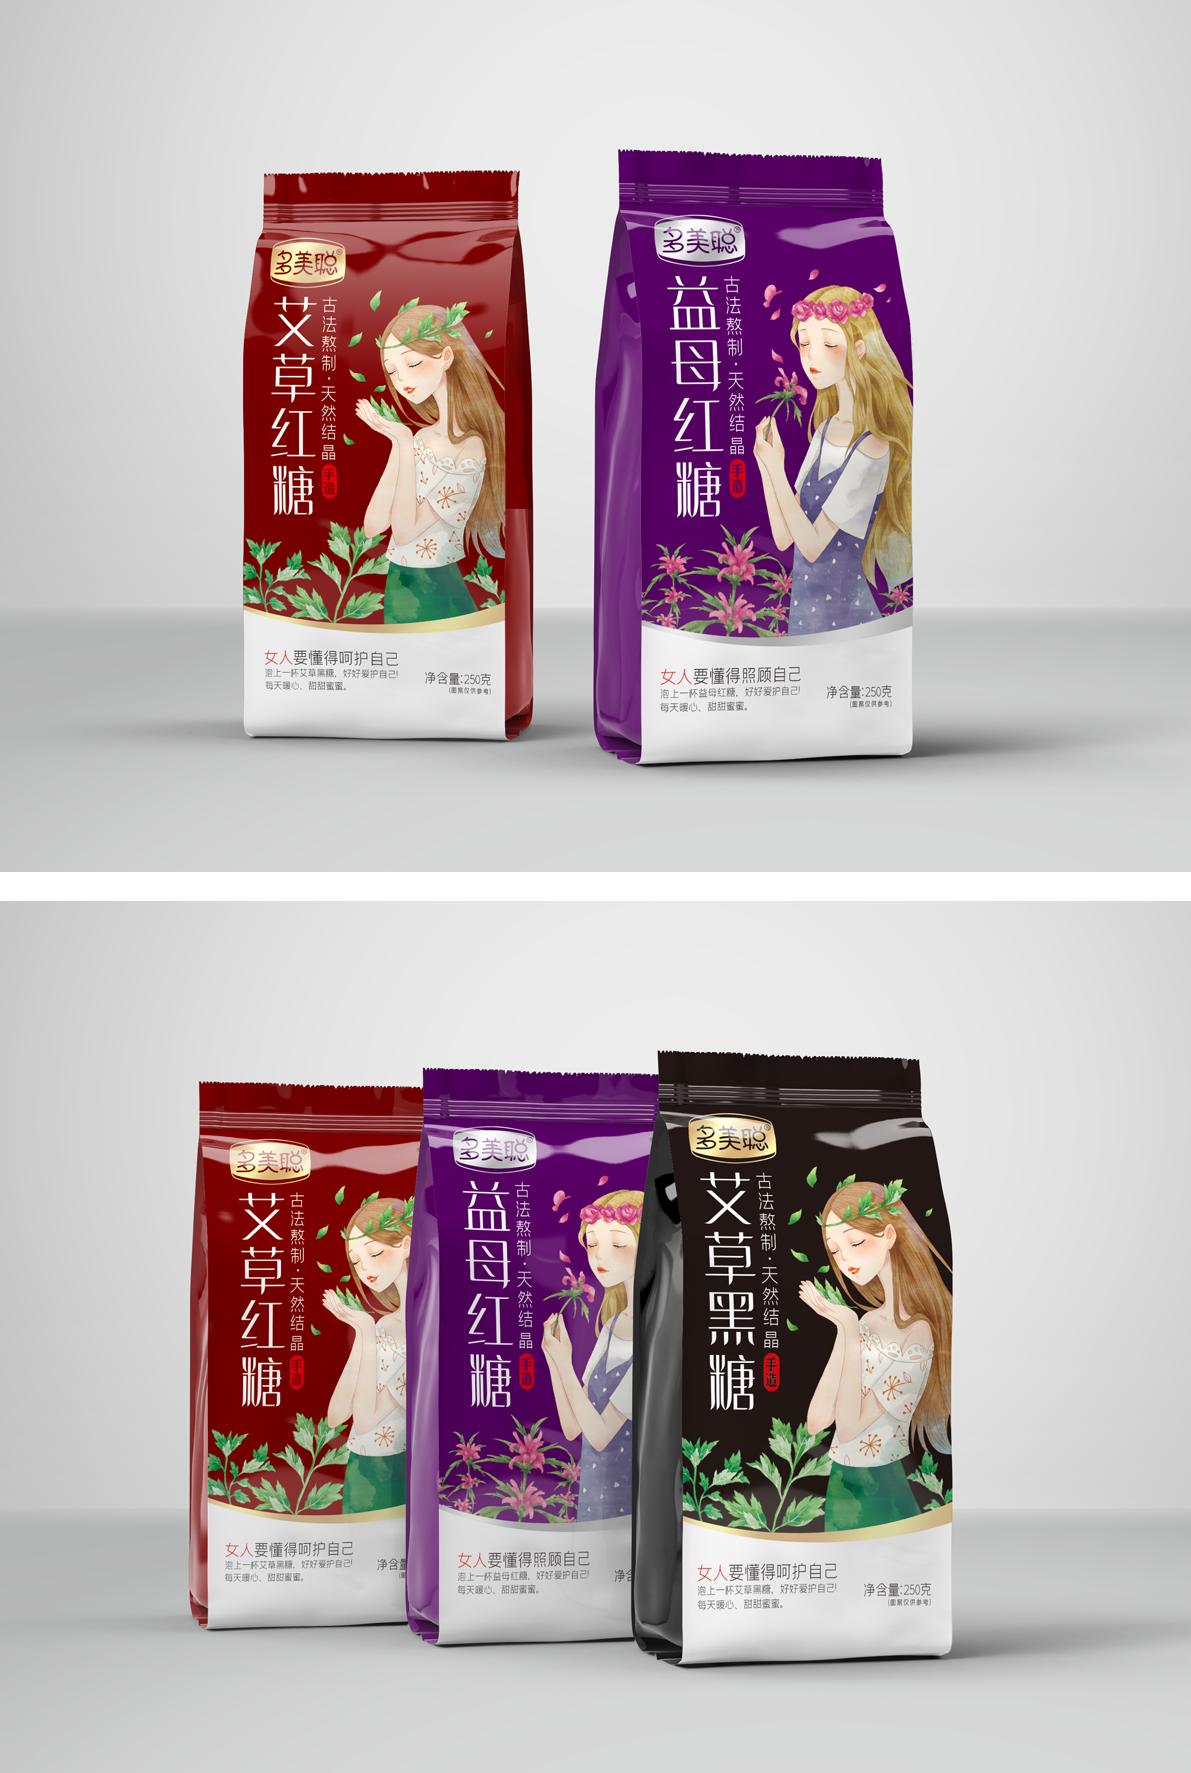 善行研创一多美聪女性红糖黑糖系列产品包装设计